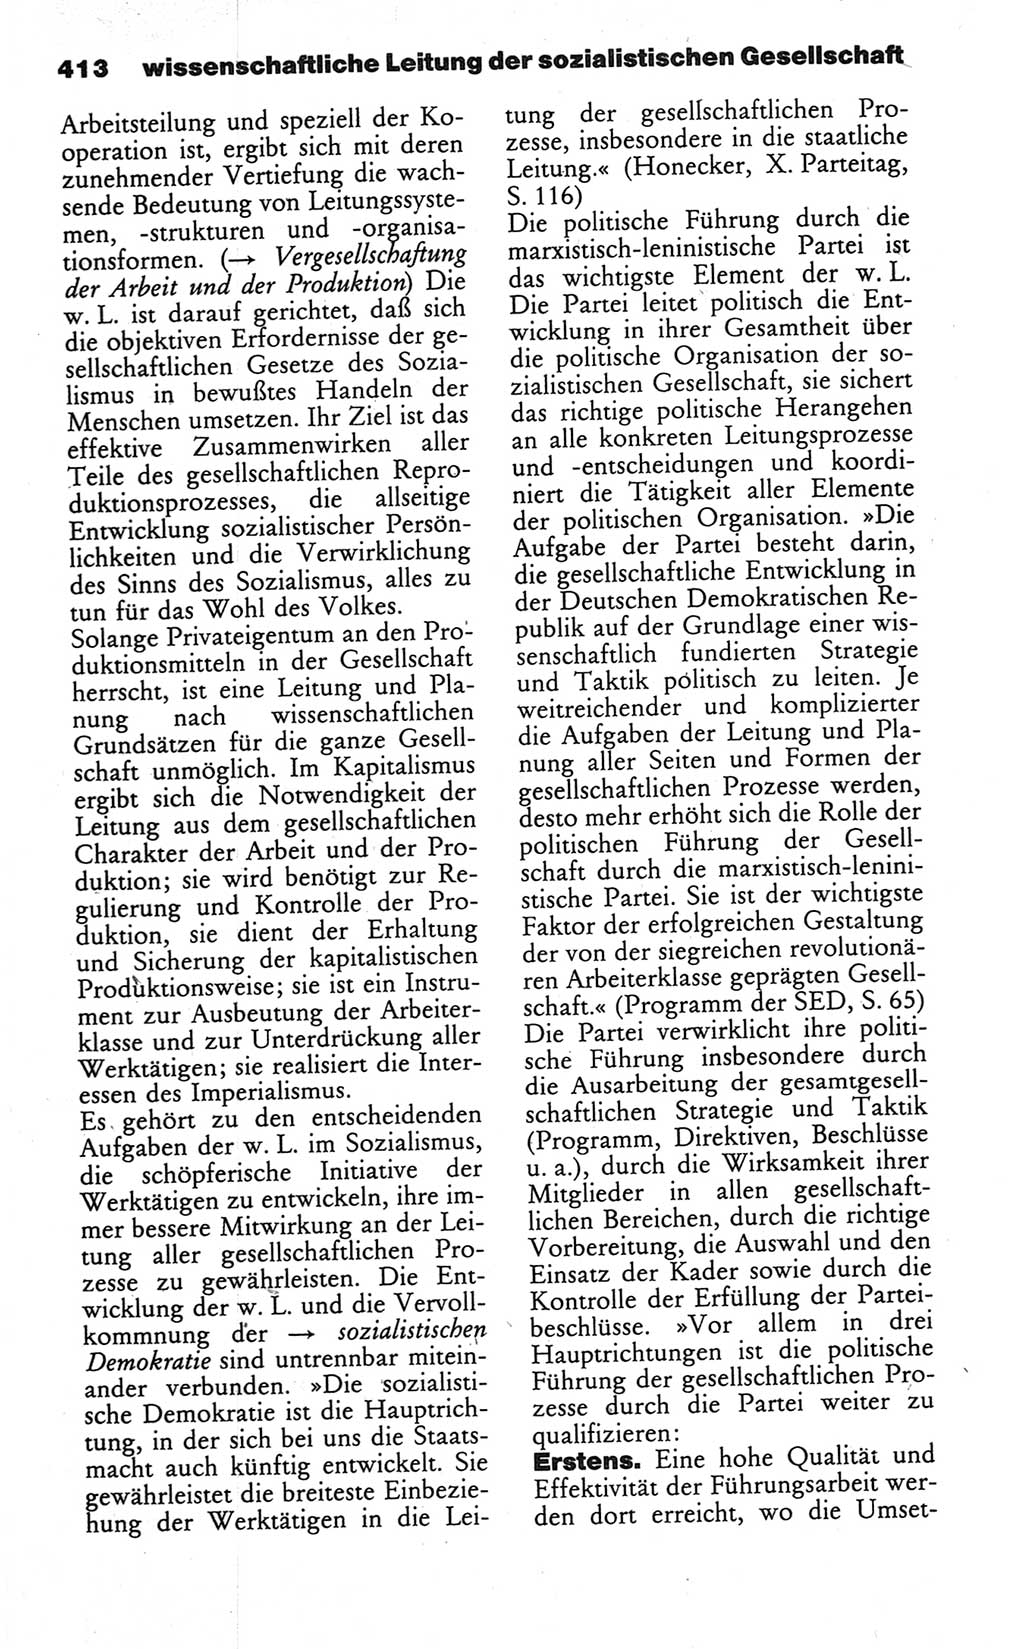 Wörterbuch des wissenschaftlichen Kommunismus [Deutsche Demokratische Republik (DDR)] 1984, Seite 413 (Wb. wiss. Komm. DDR 1984, S. 413)